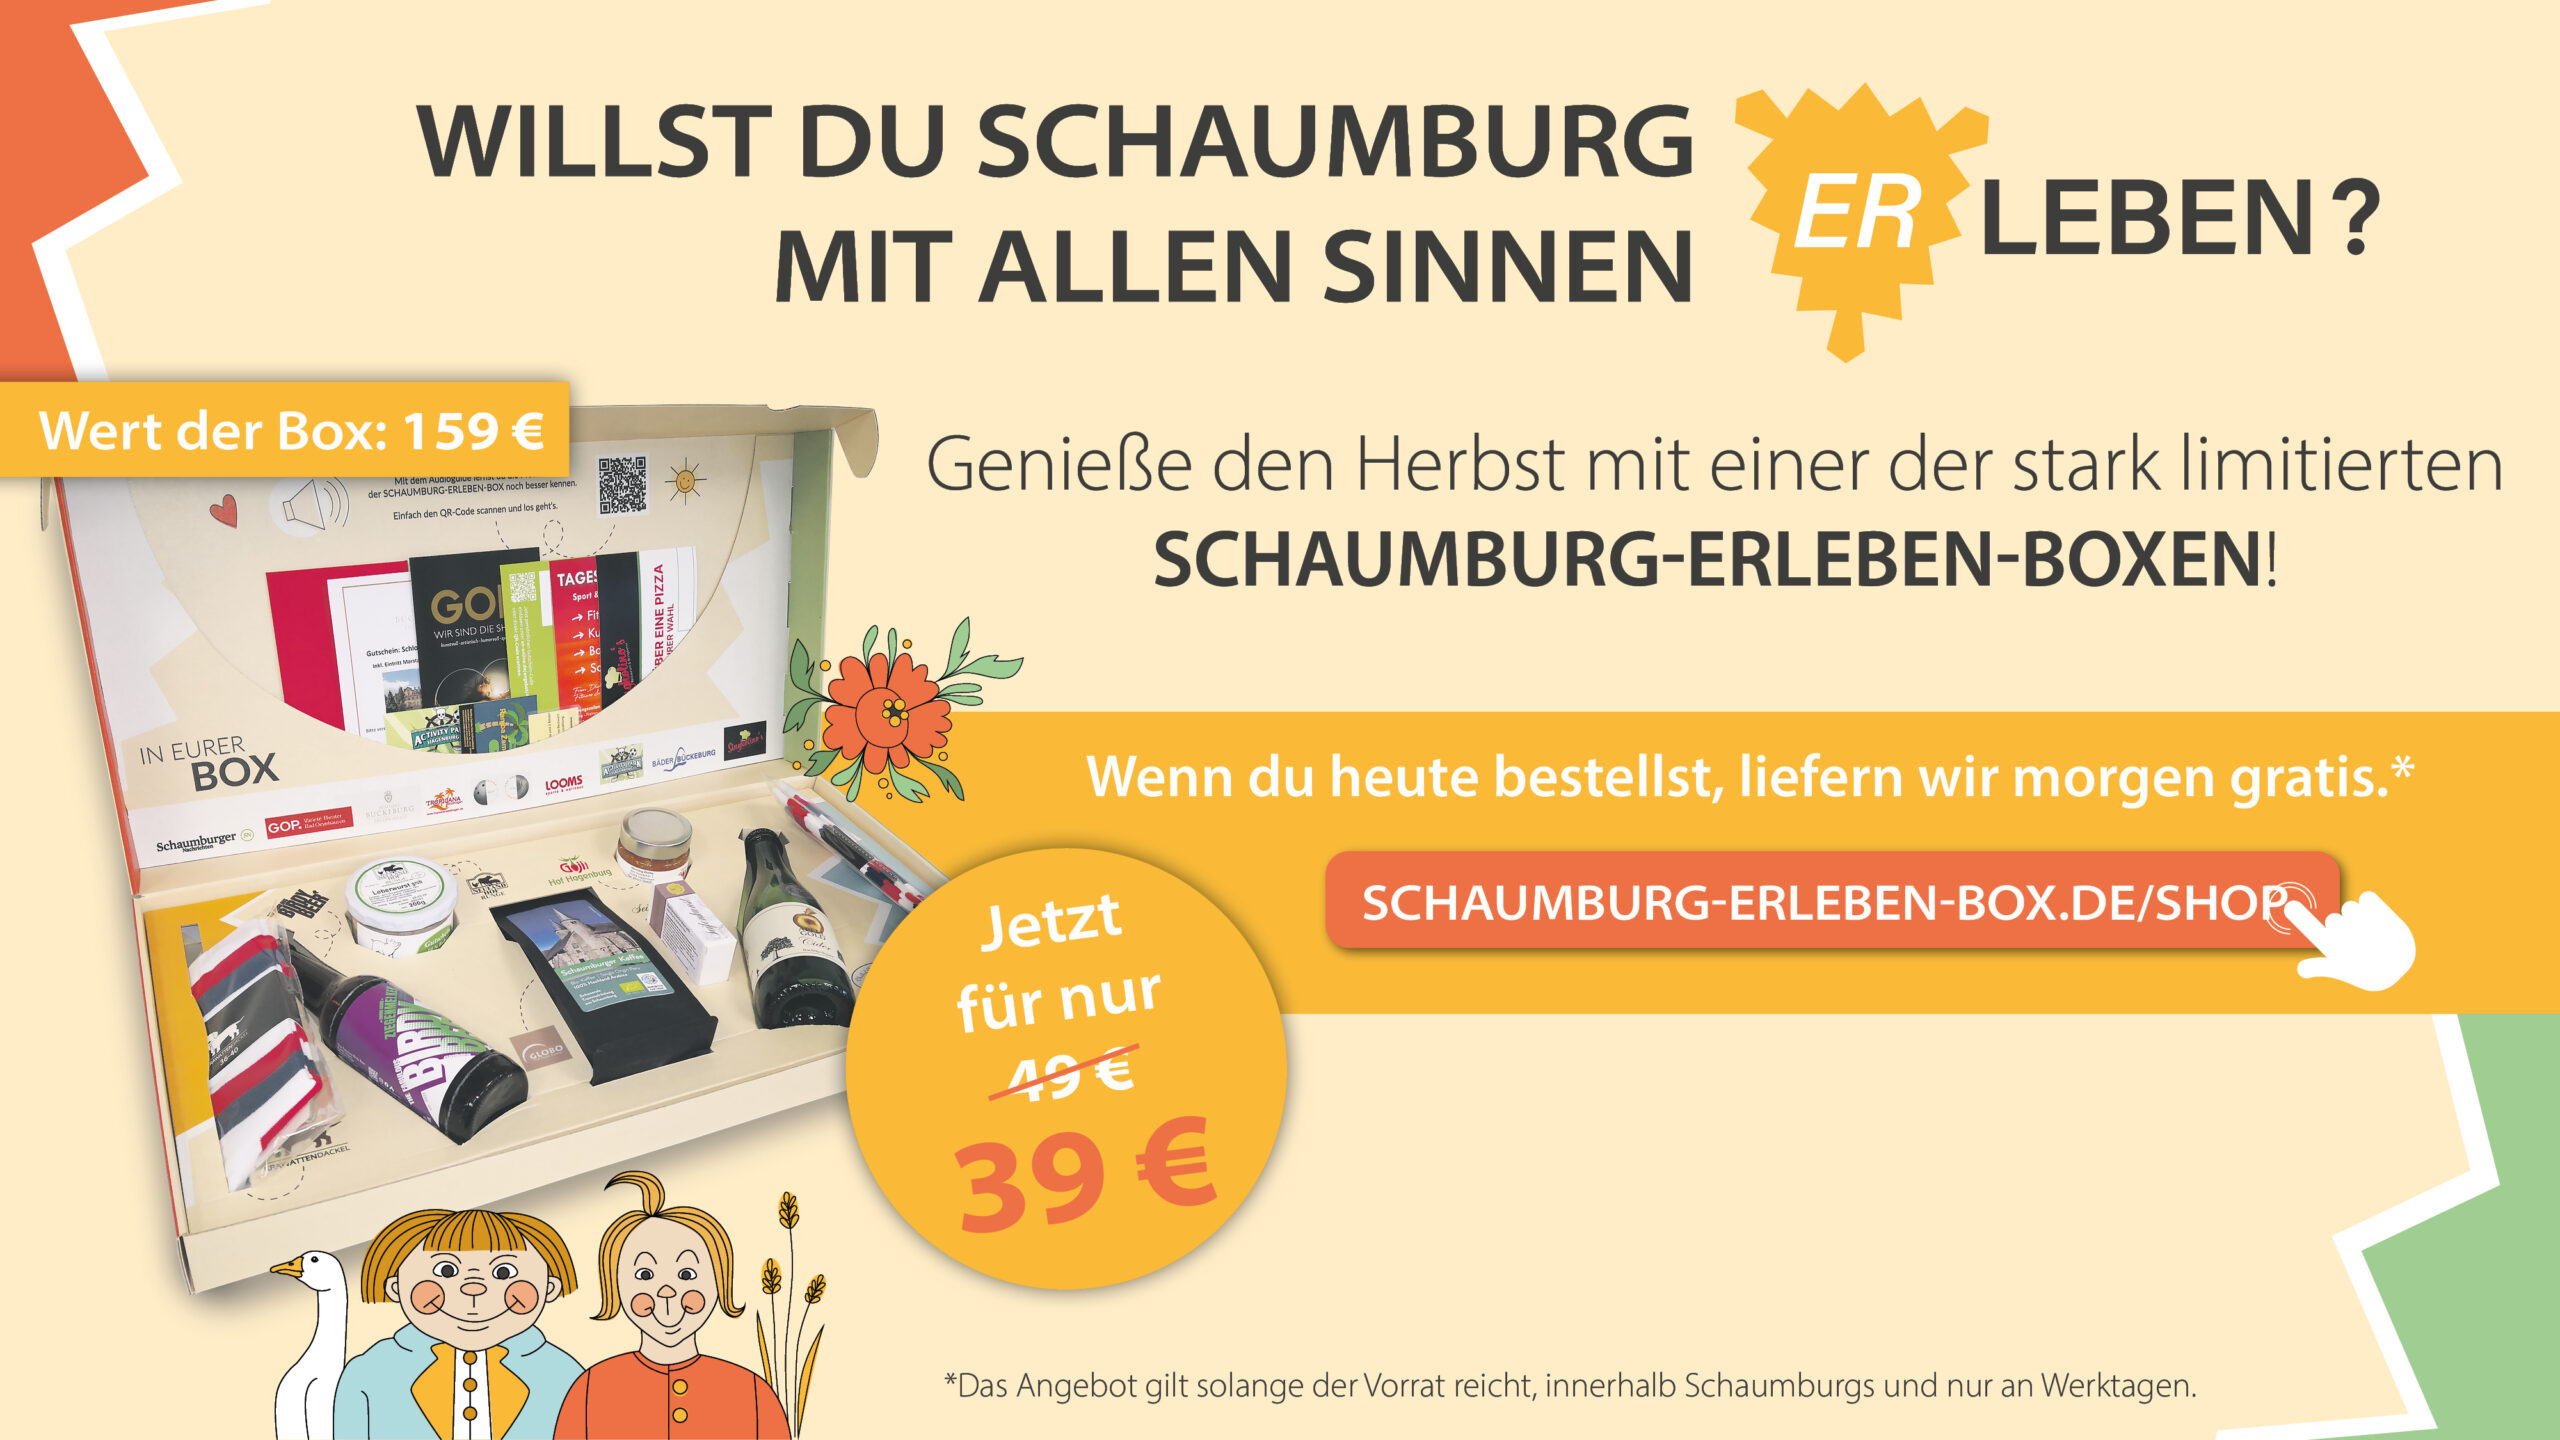 Schaumburg-erleben-Box